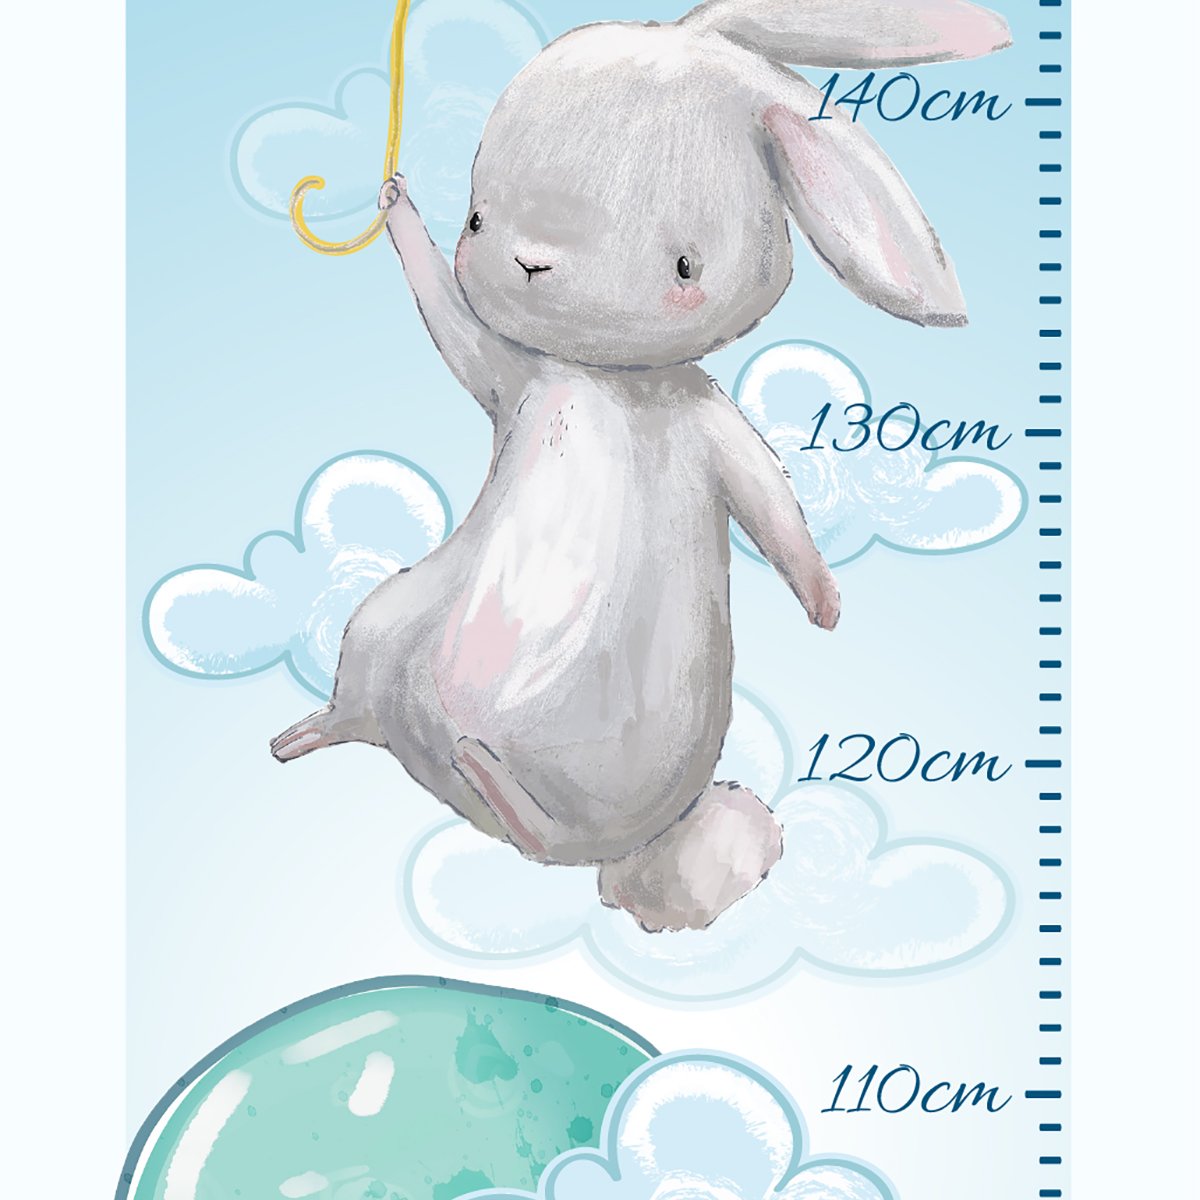 Naklejka miarka wzrostu dla dziecka - króliczek i kolorowy balonik#kolor_kolorowy